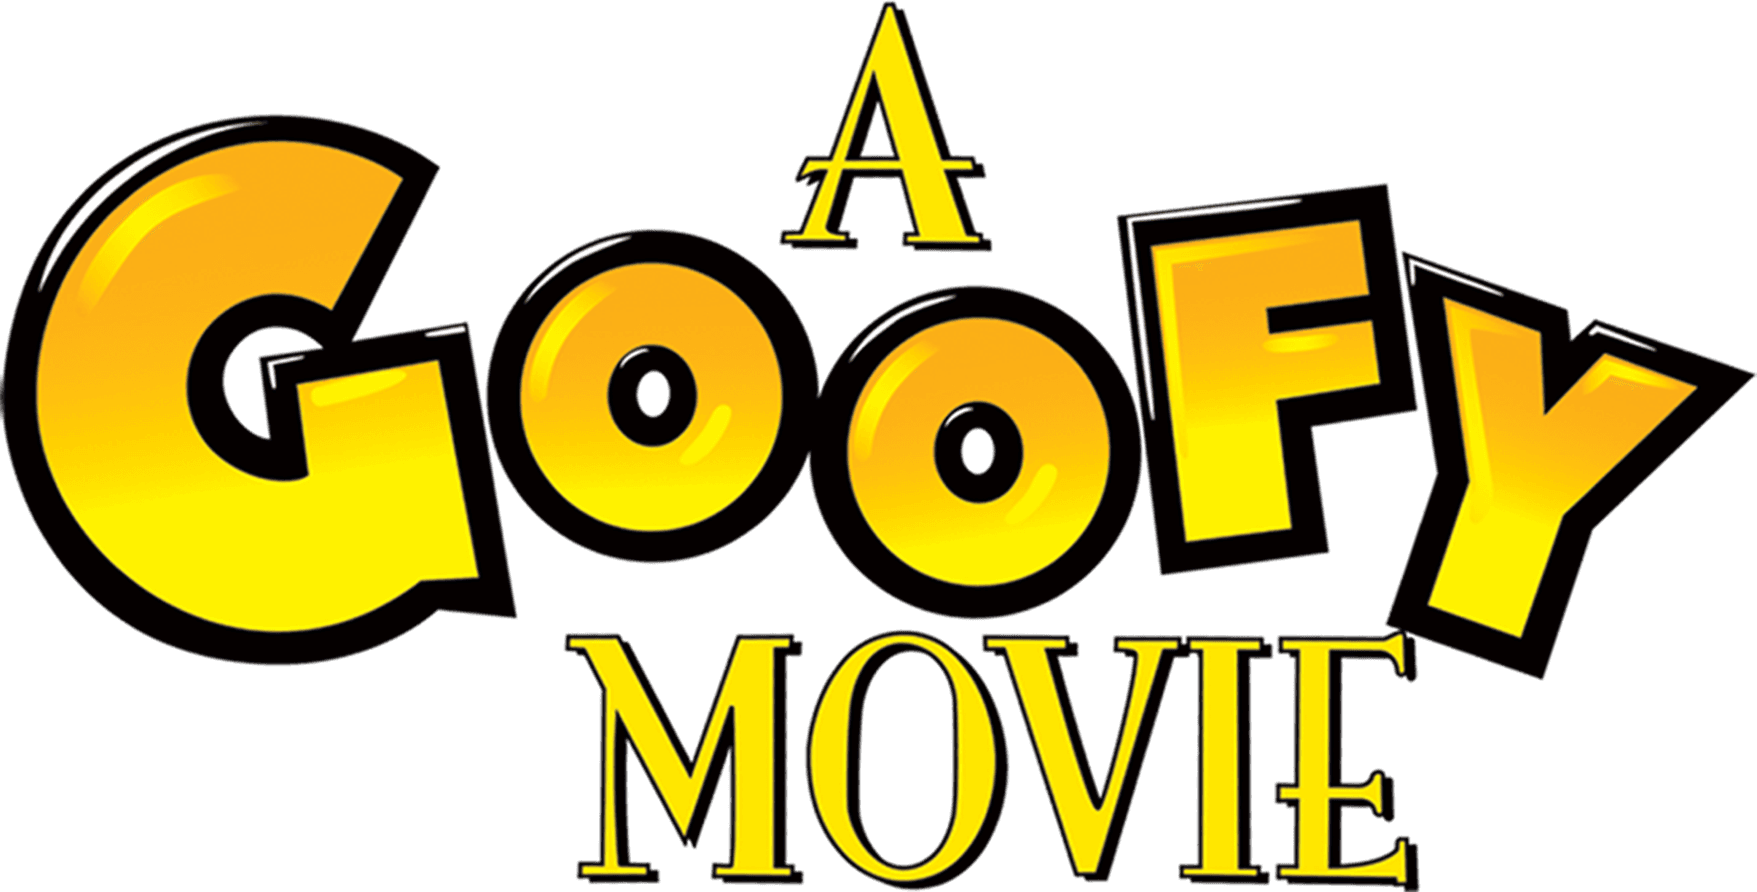 A Goofy Movie logo